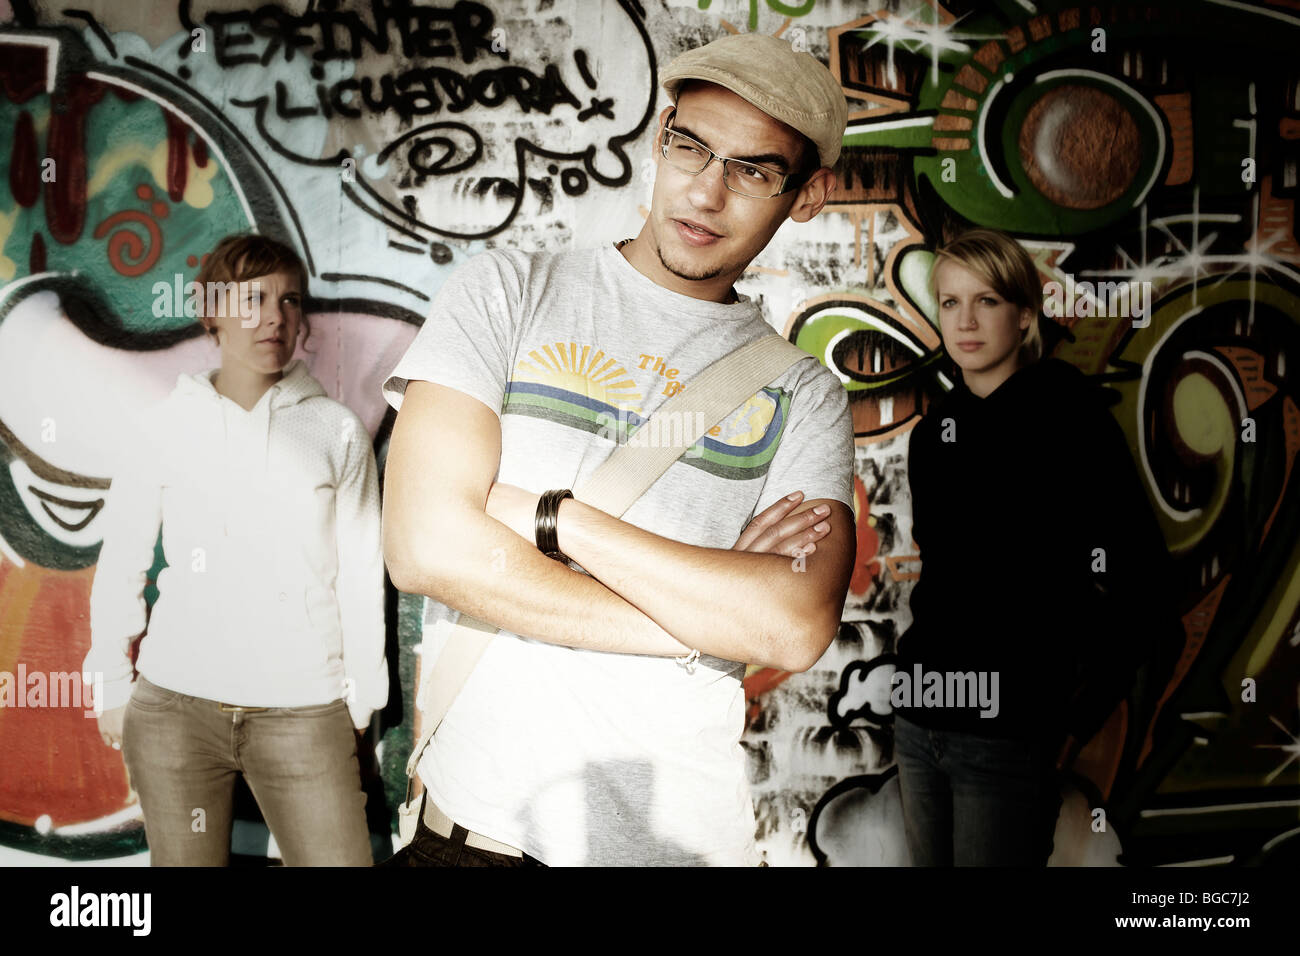 Drei Jugendliche vor einer Graffitiwand, Jugend, Gruppe, cool Stockfoto